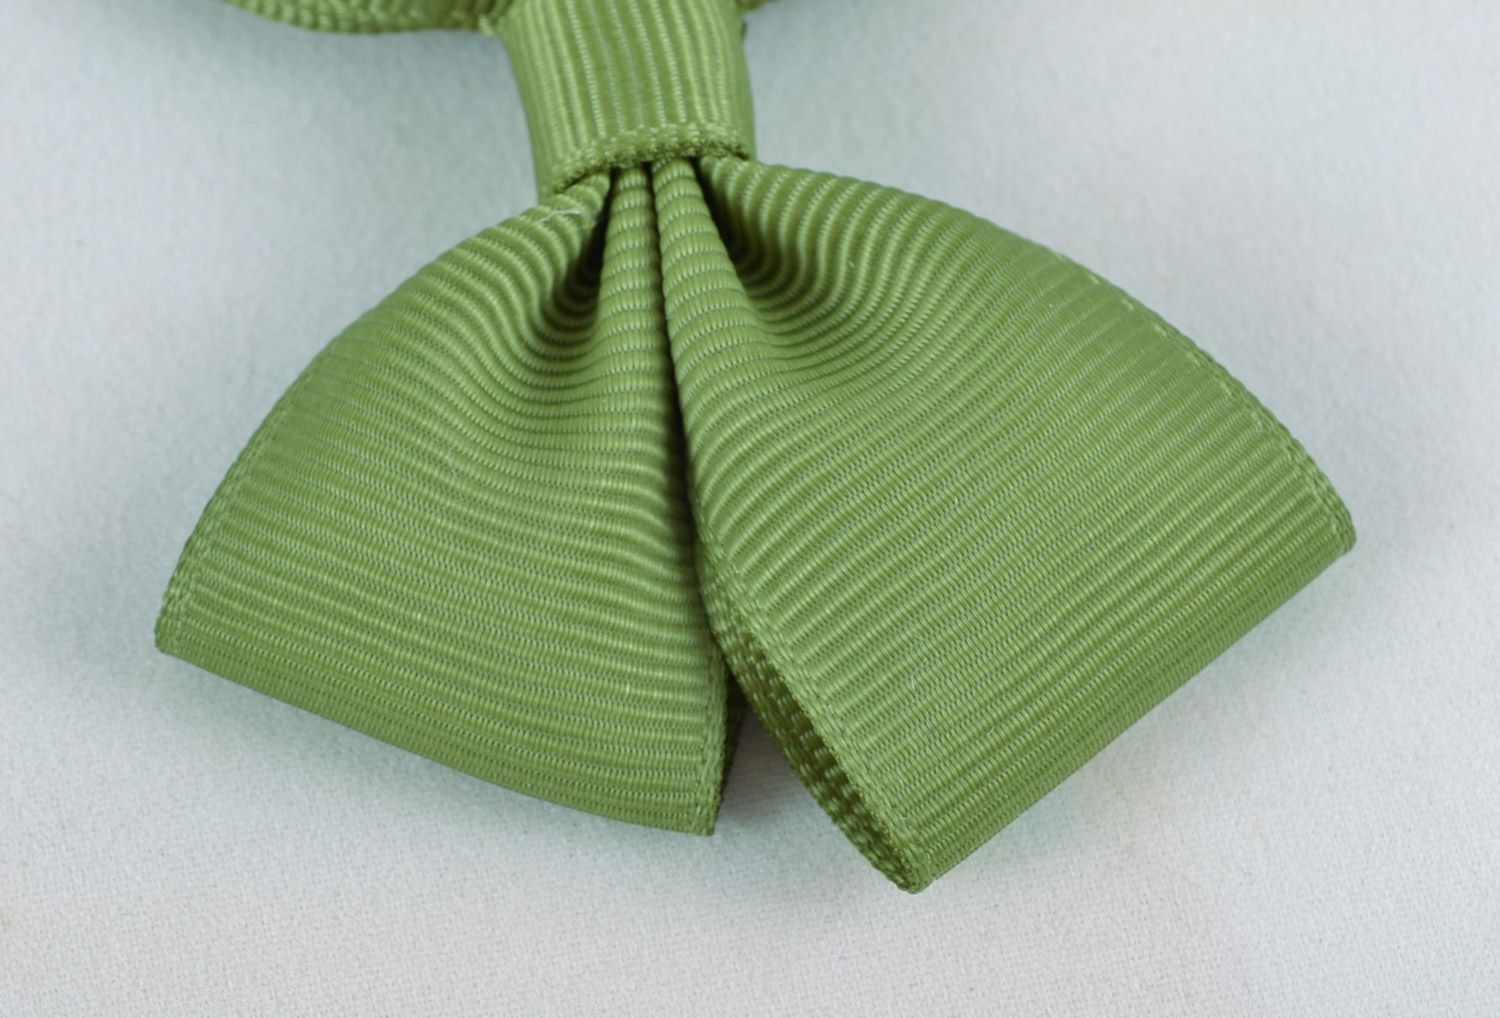 Noeuds en rubans de reps faits main design original couleur verte 2 pièces photo 4